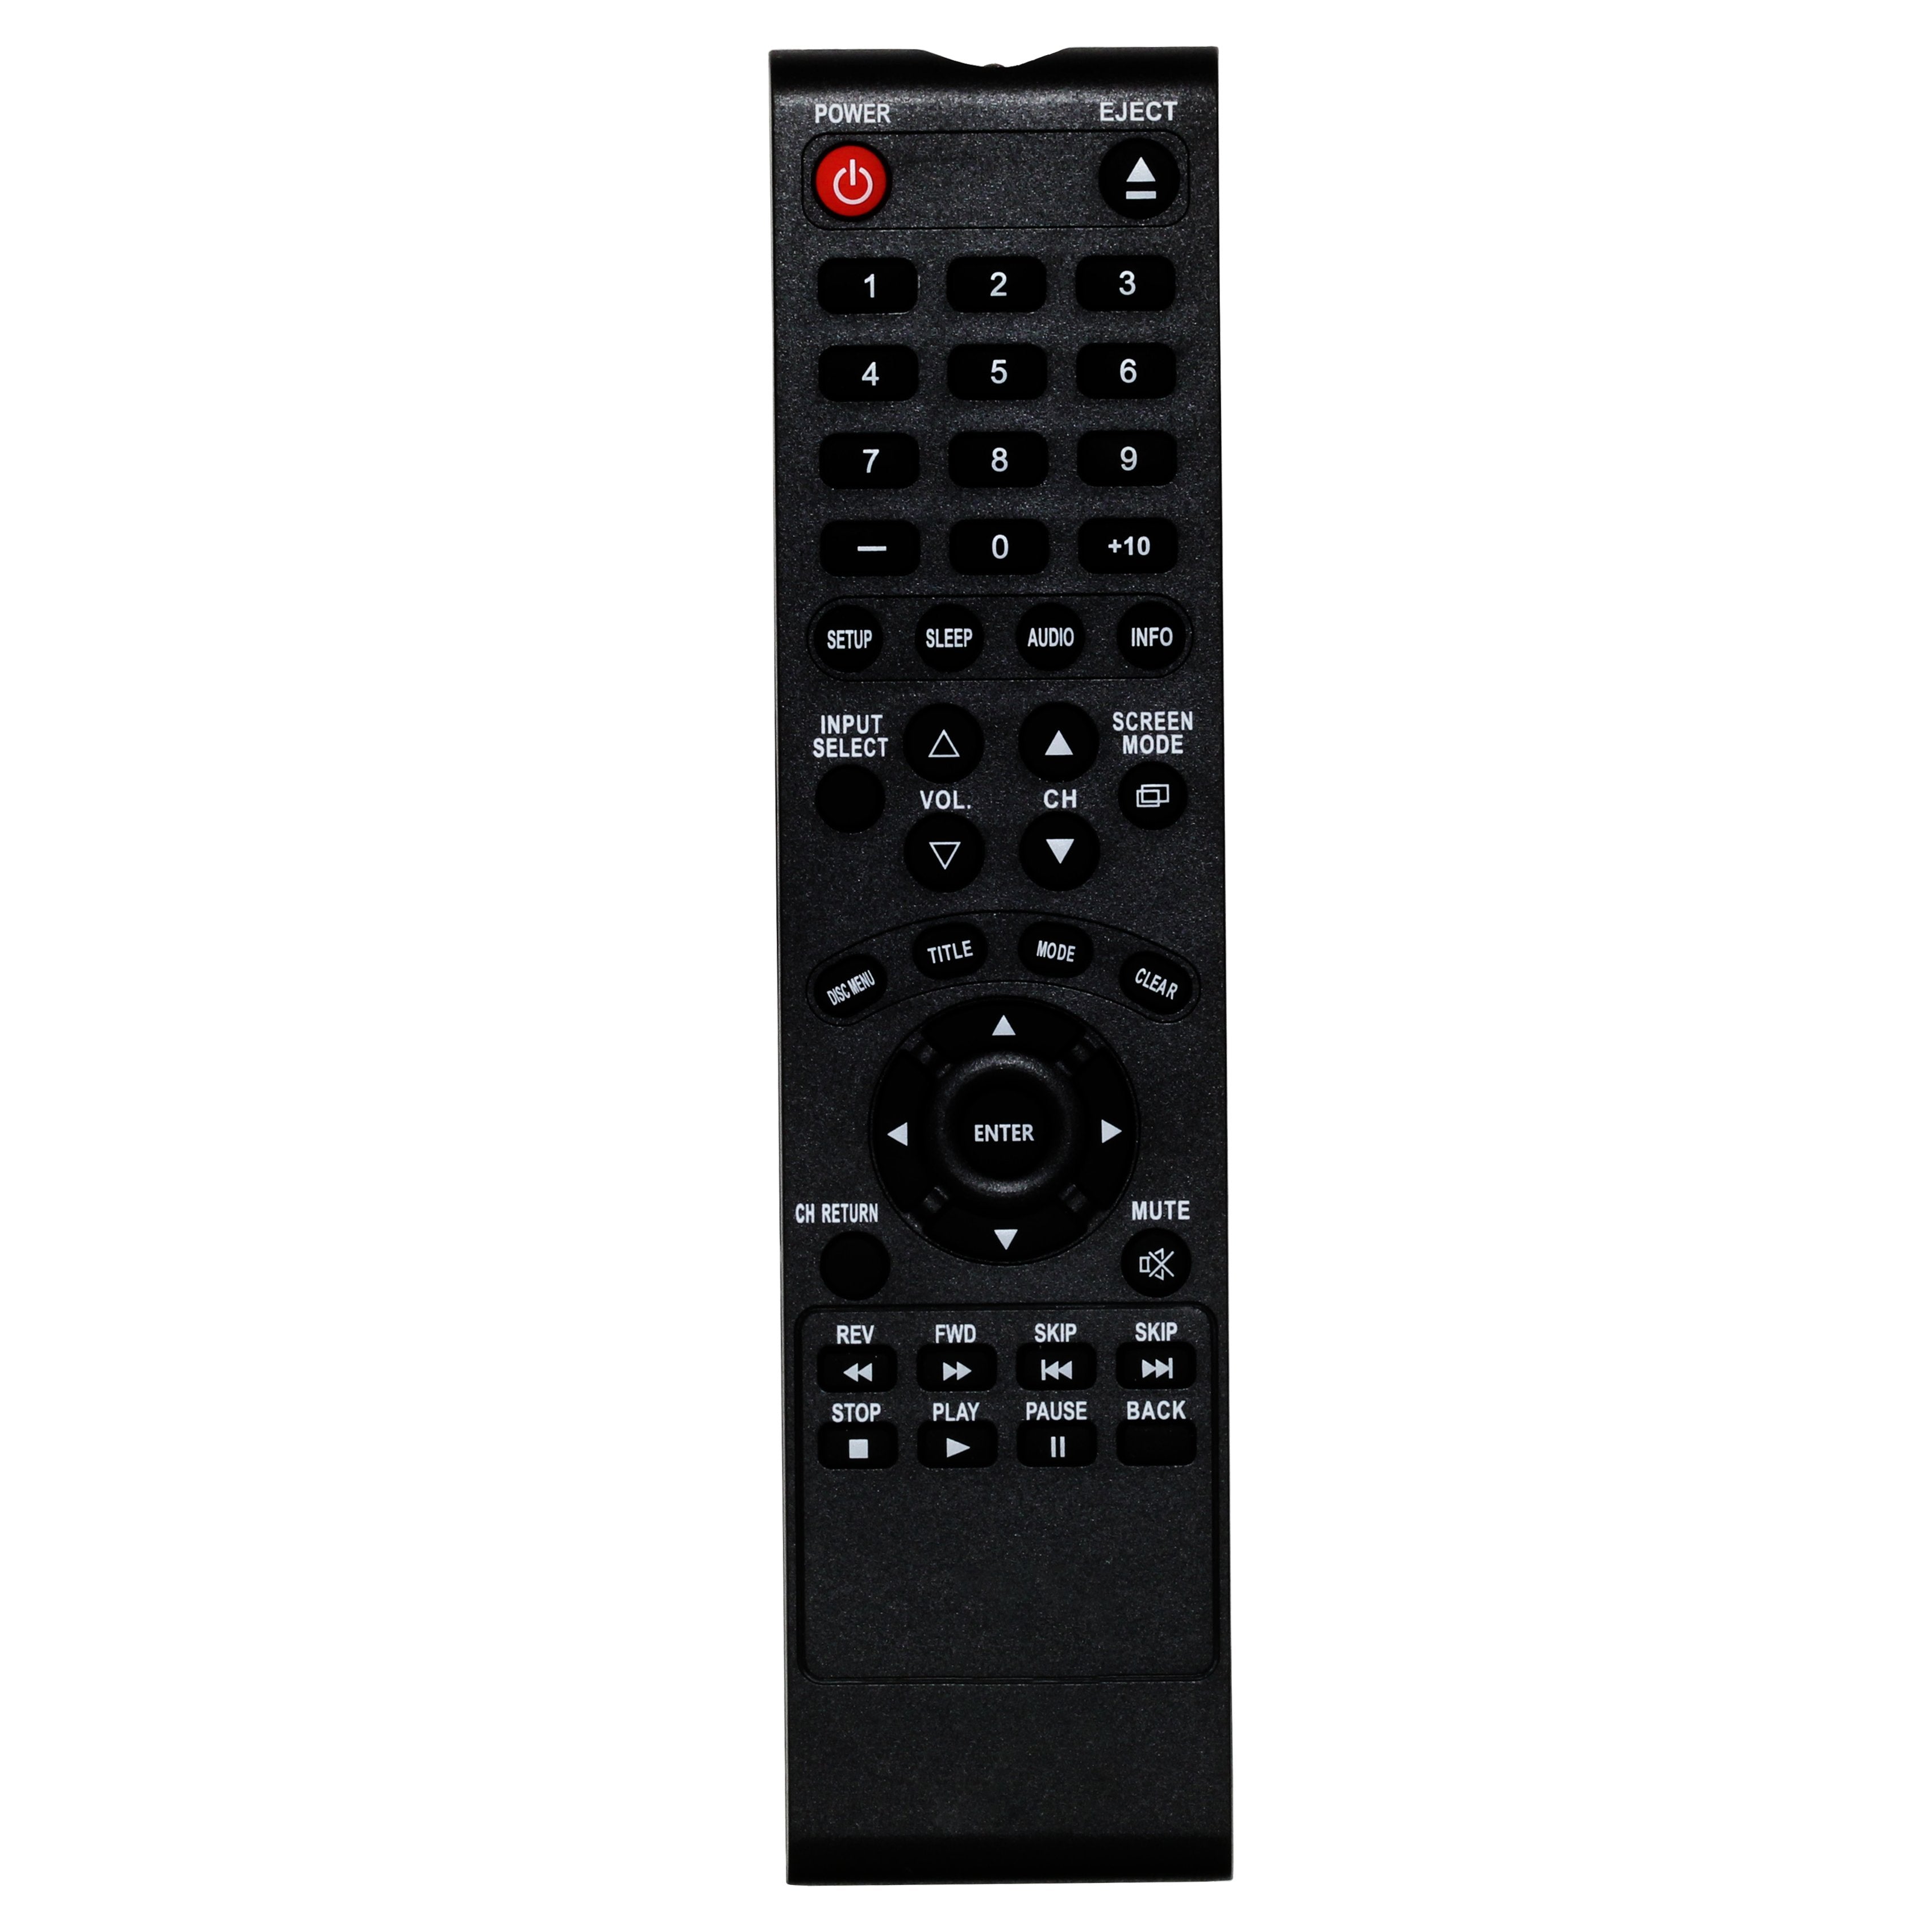 Sylvania RLS364HP02  TV Remote